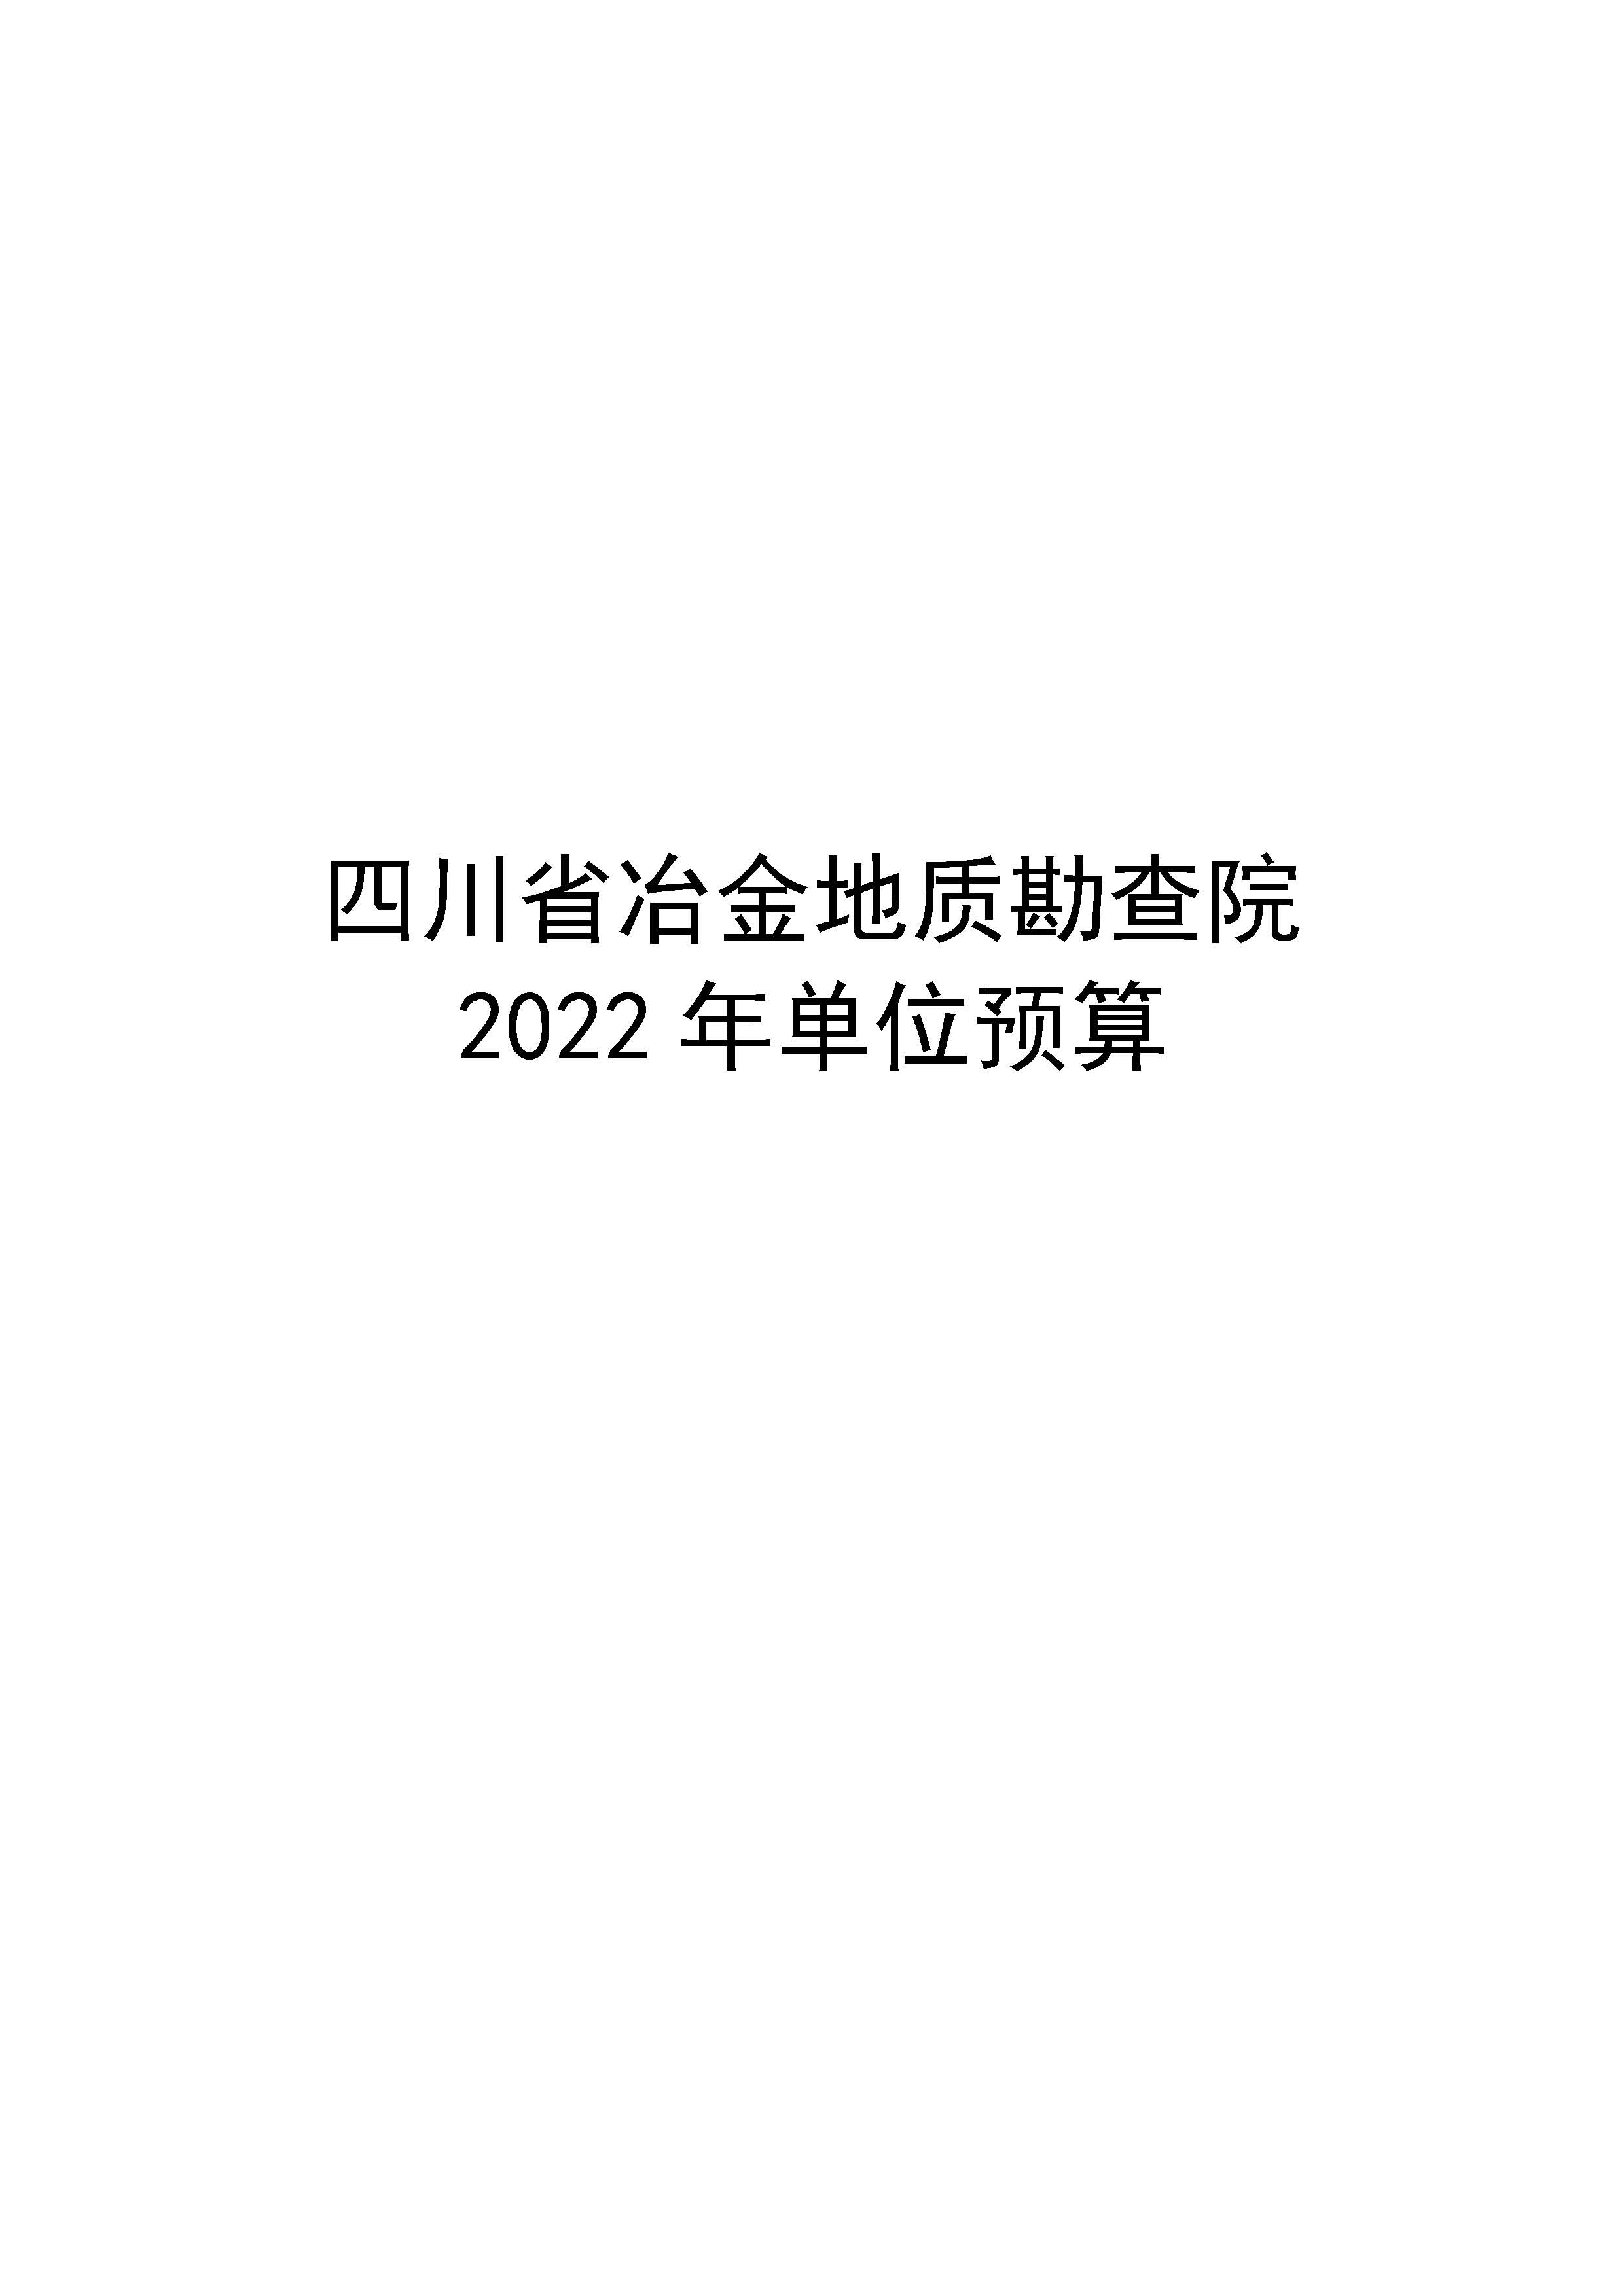 2022单位公开-地勘院_页面_01